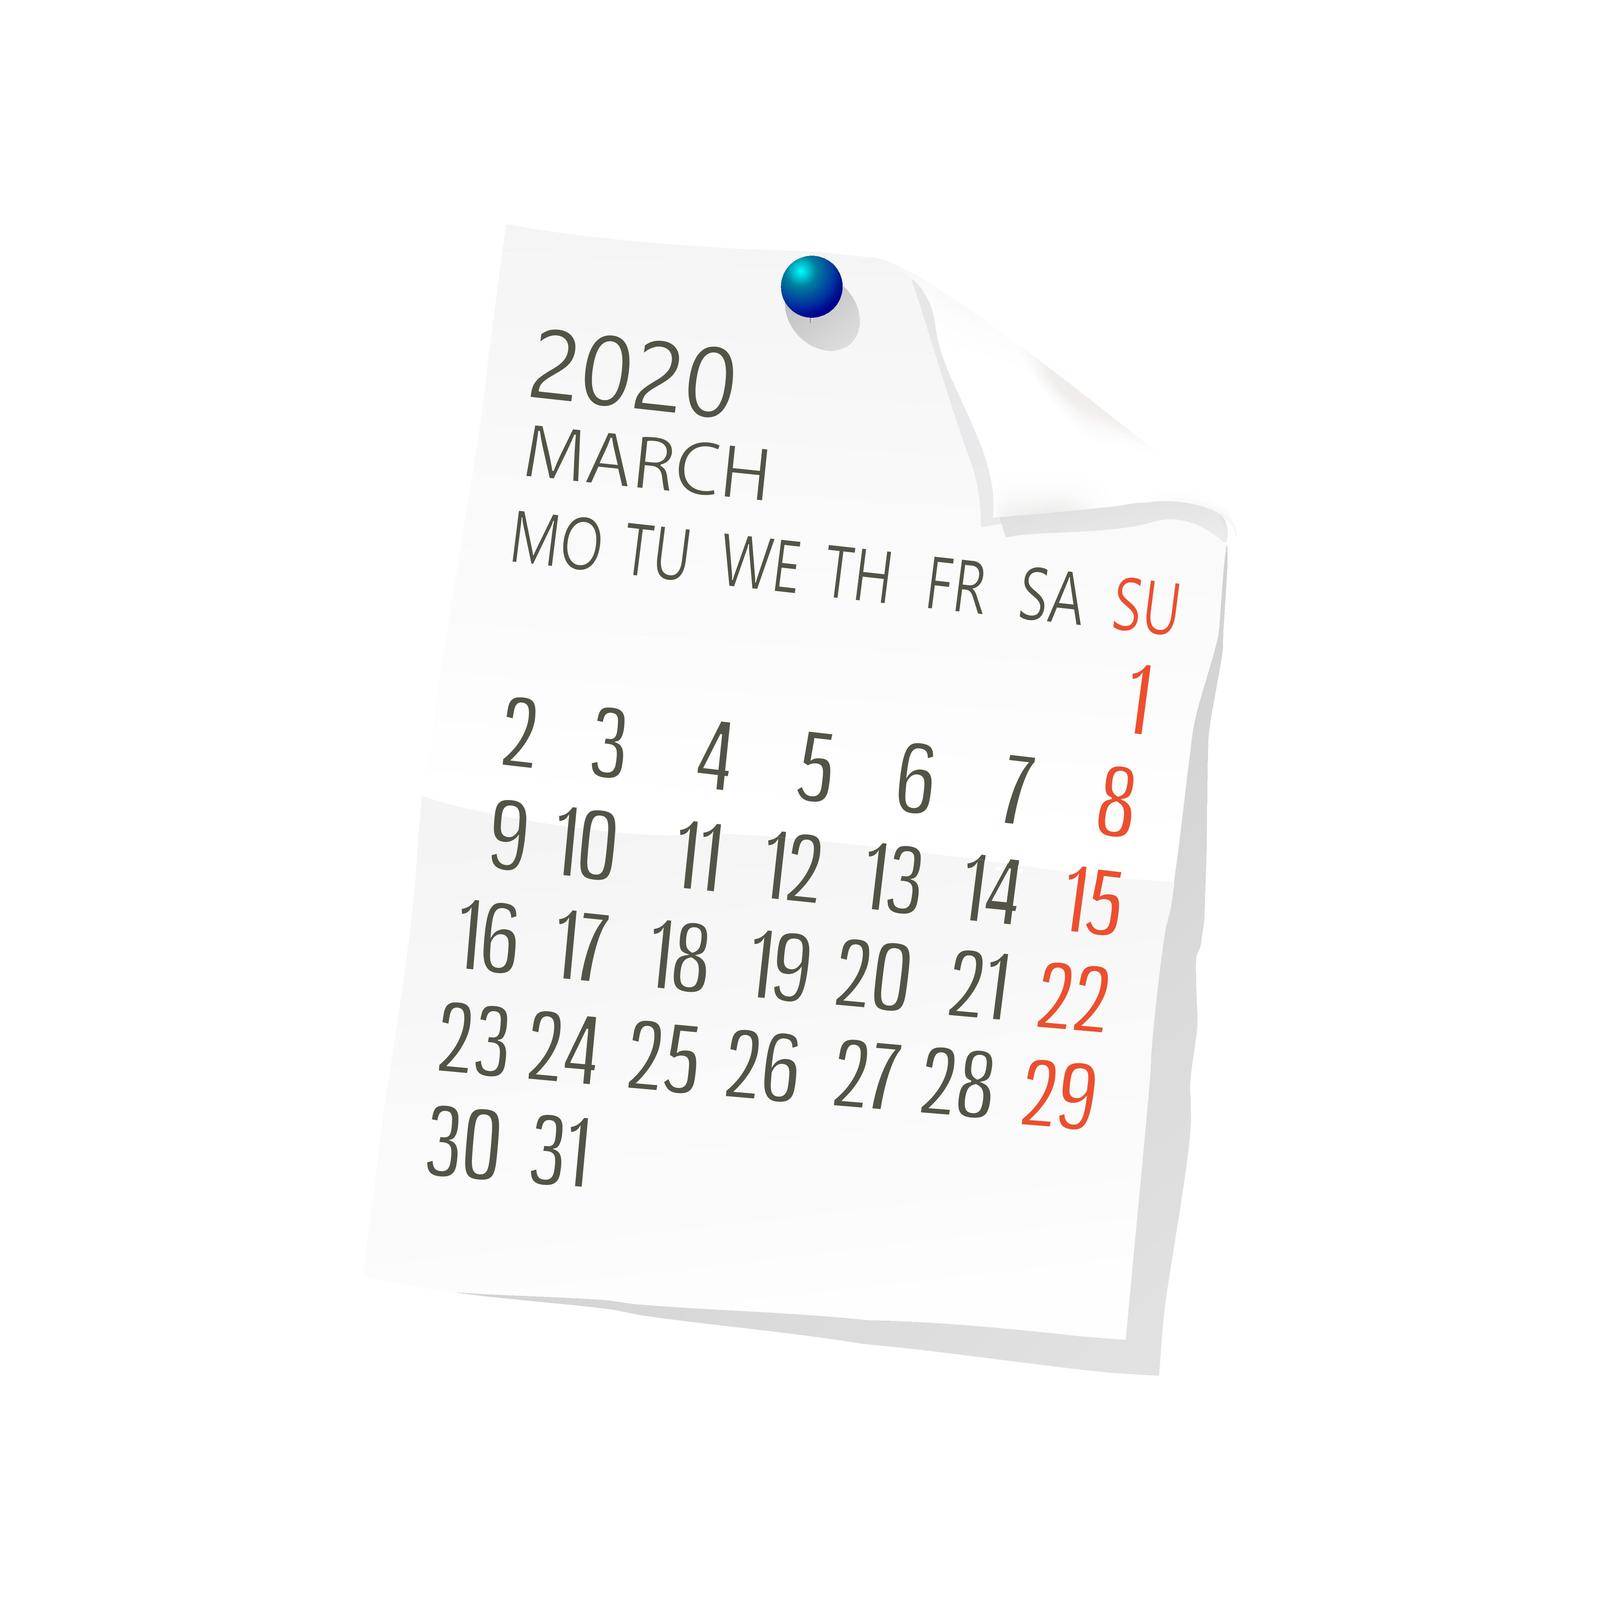 2020 March calendar by Lirch